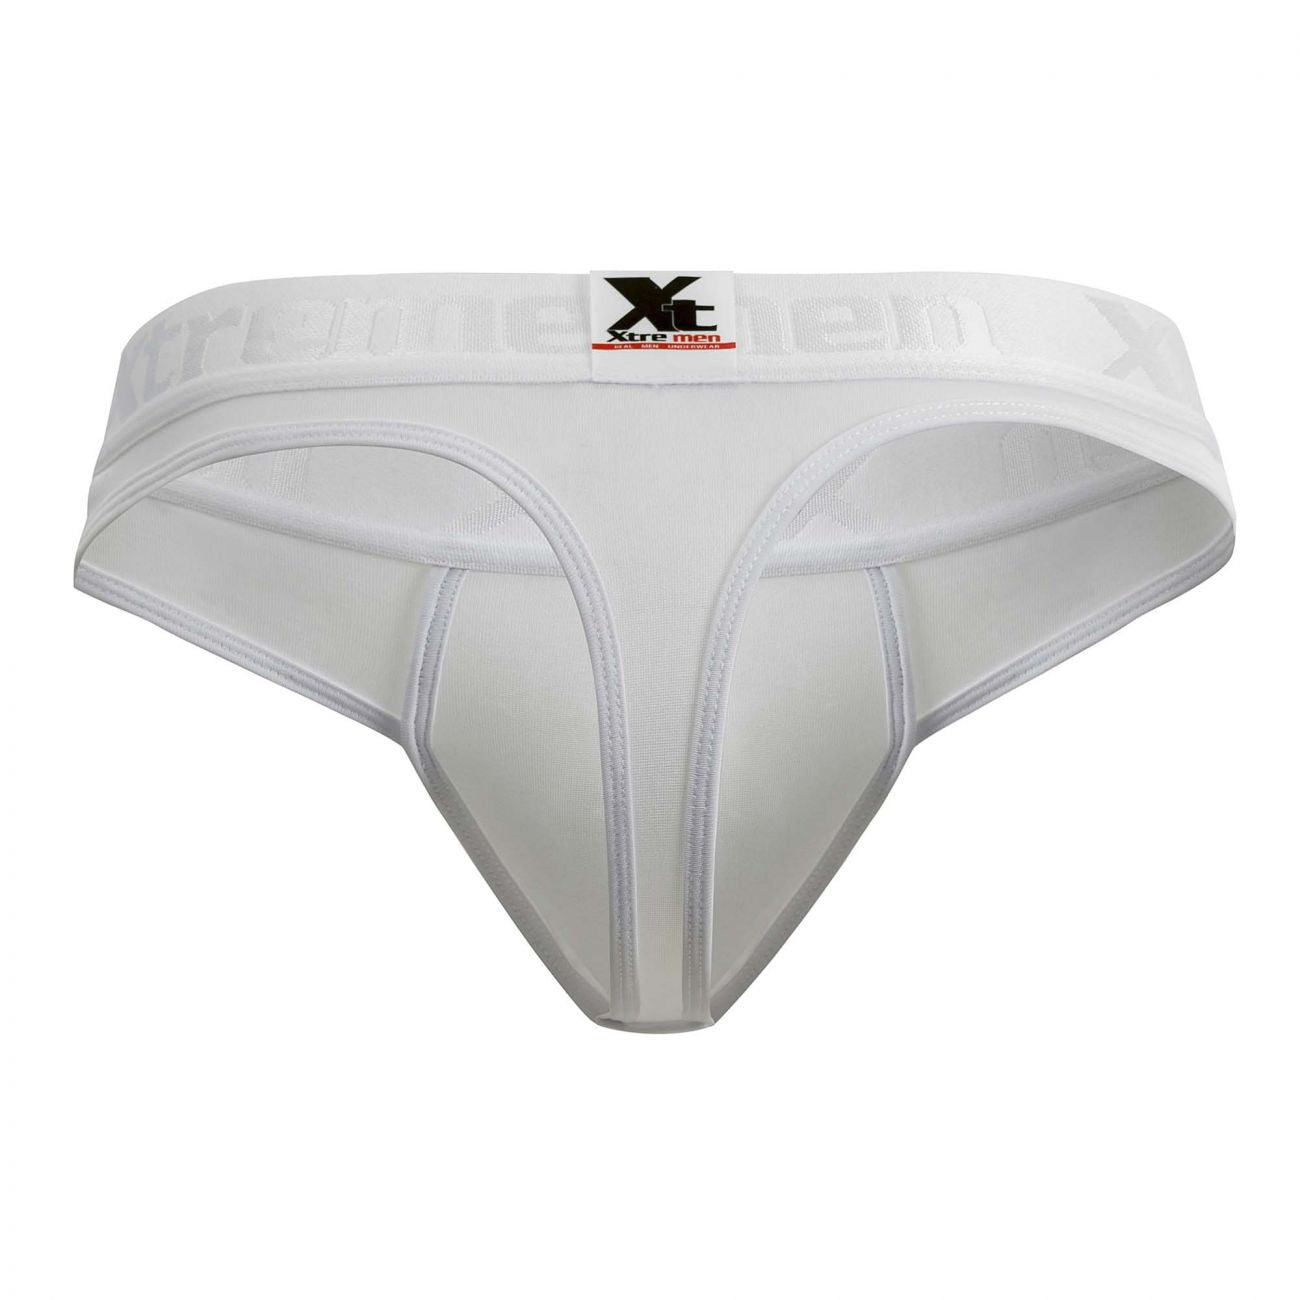 Xtremen 91031-3 3PK Piping Thongs